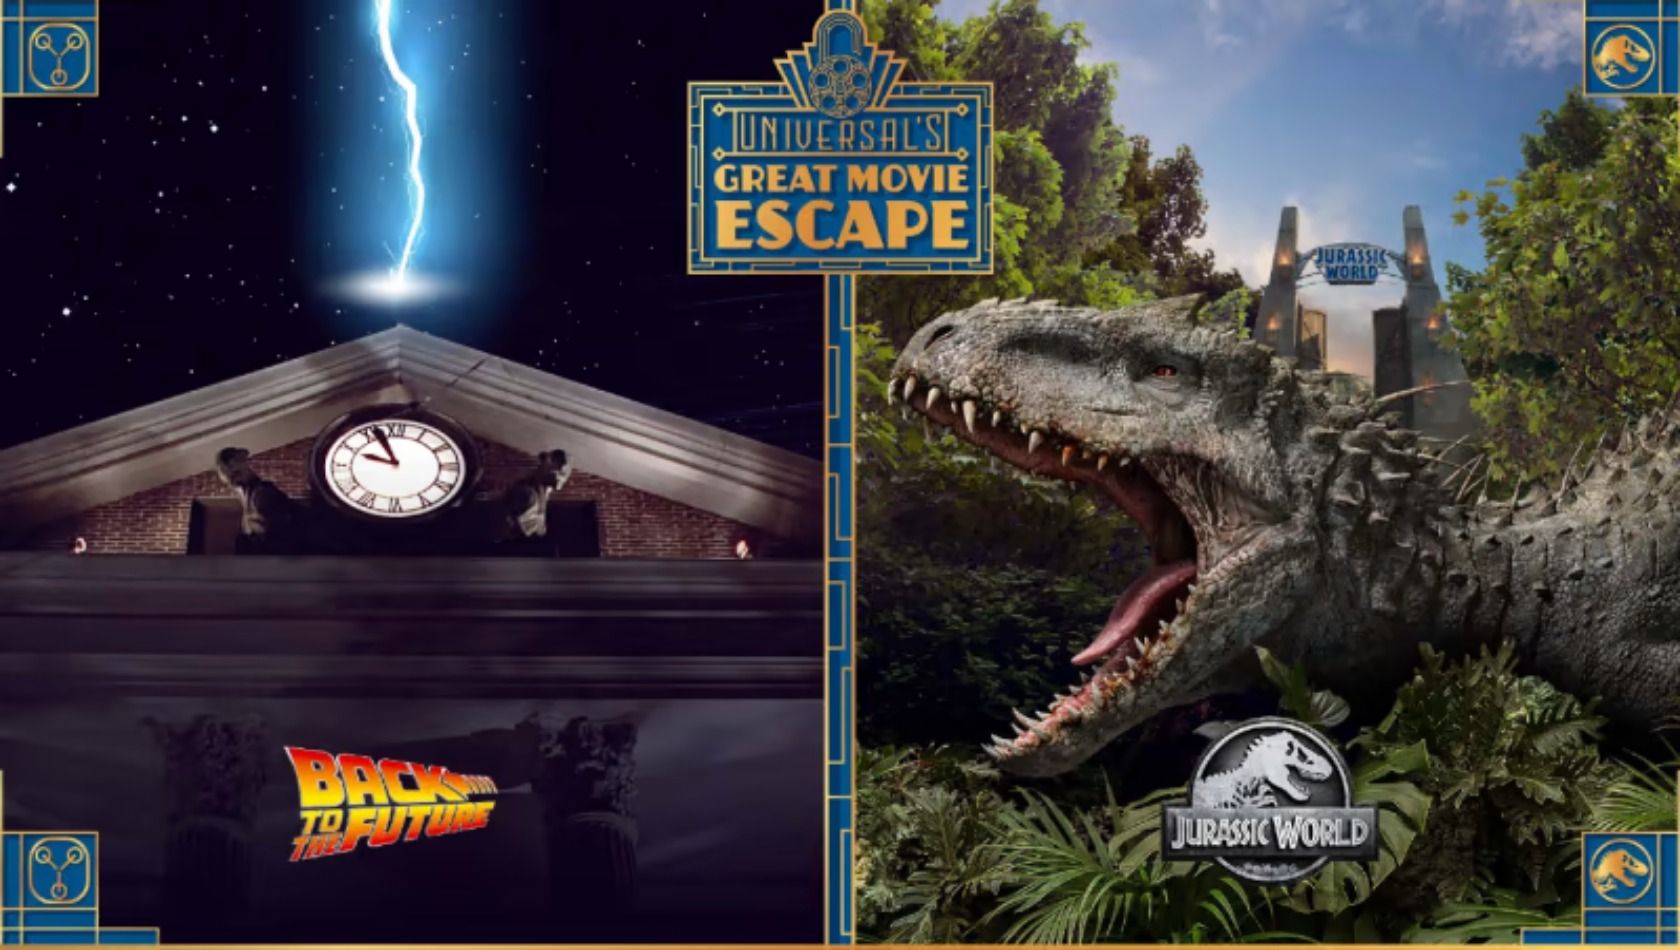 Ankündigung der Escape Rooms von The Great Movie Escape im Universal Orlando Resort